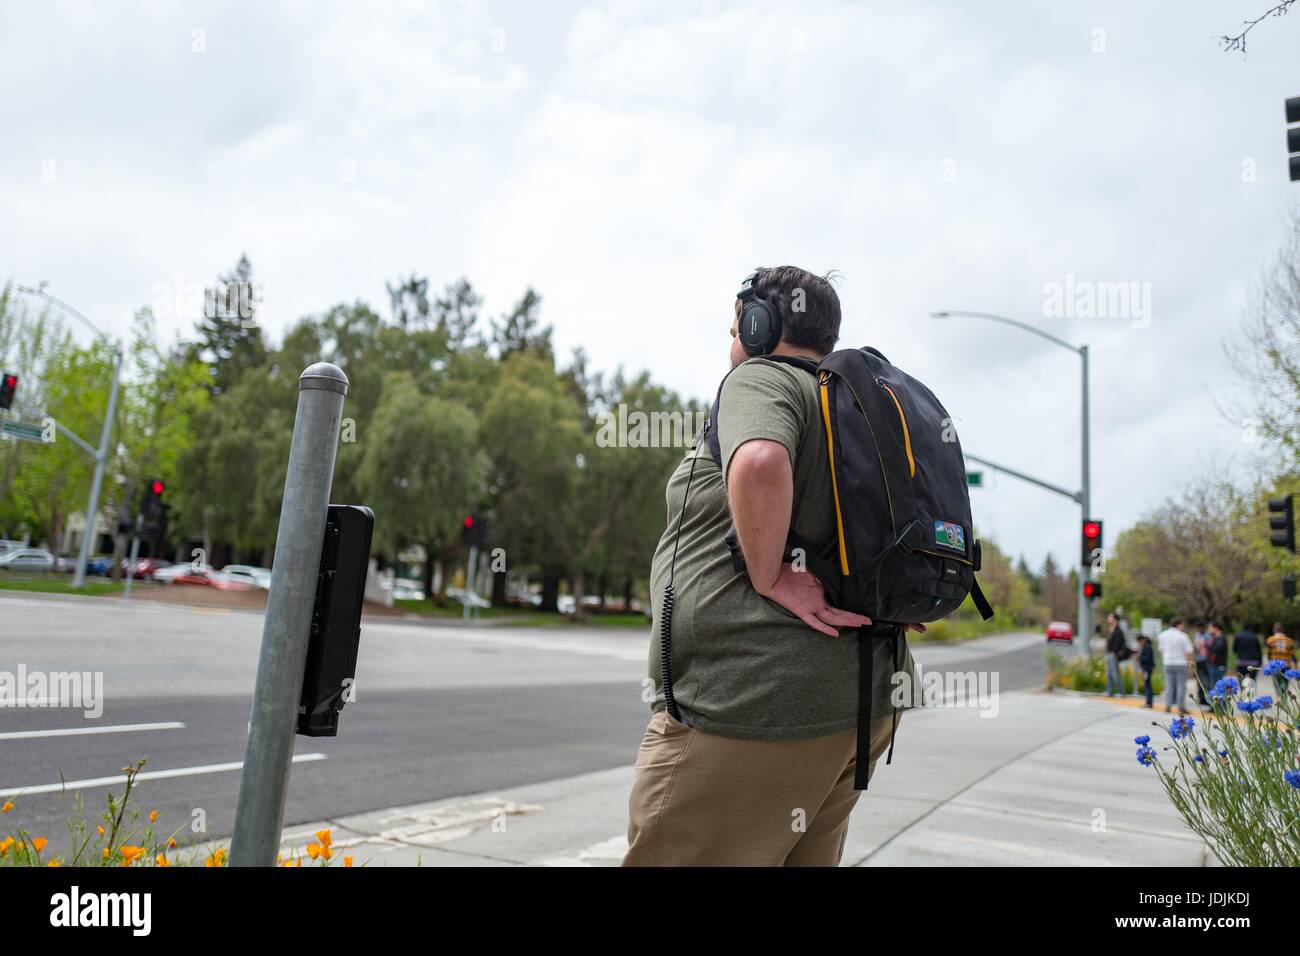 Un joven trabajador de tecnología, usando audífonos y una mochila, se encuentra en una intersección en el Googleplex, Silicon Valley, sede de la compañía de tecnología de motor de búsqueda y Google Inc, Mountain View, California, 7 de abril de 2017. Foto de stock